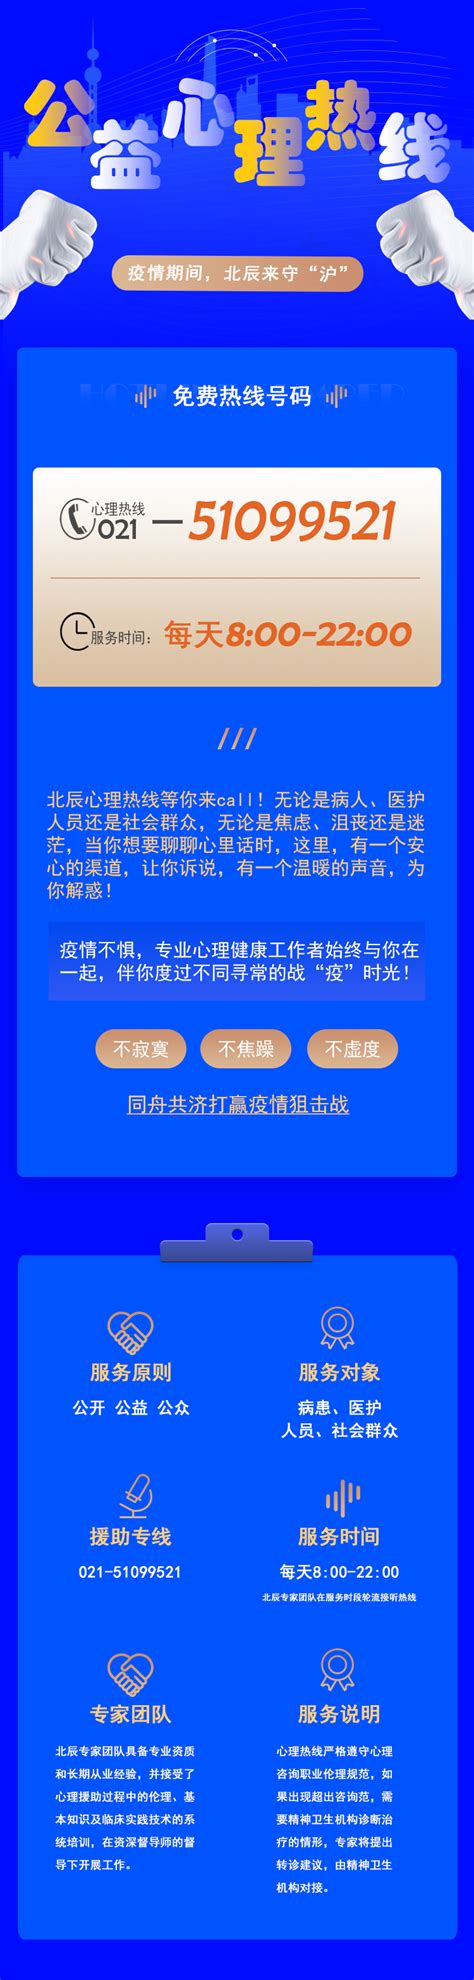 北辰心理热线丨抗击疫情，北辰来守 “ 沪 ”-上海北辰软件股份有限公司